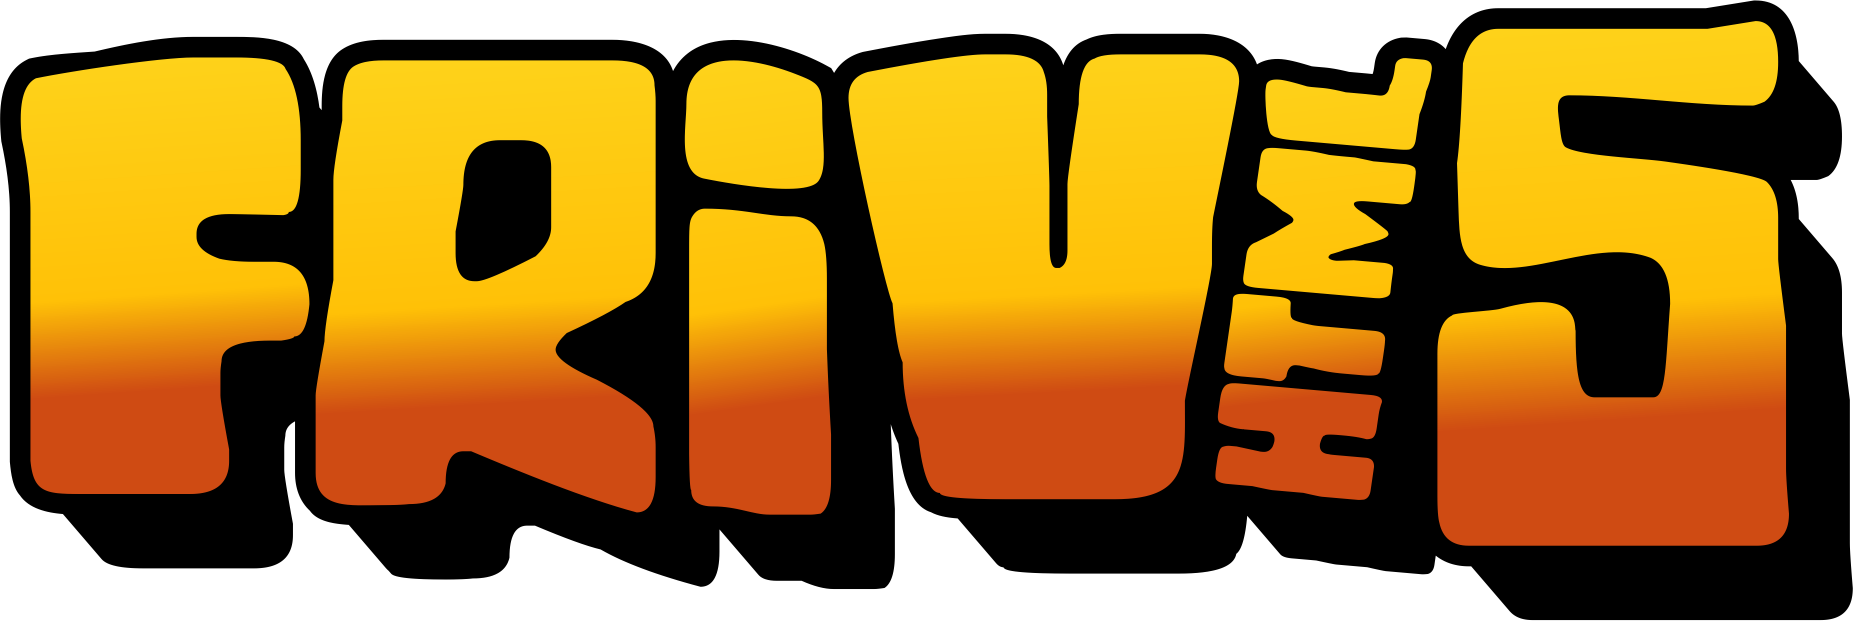 Logo of Friv5Online Games Studio